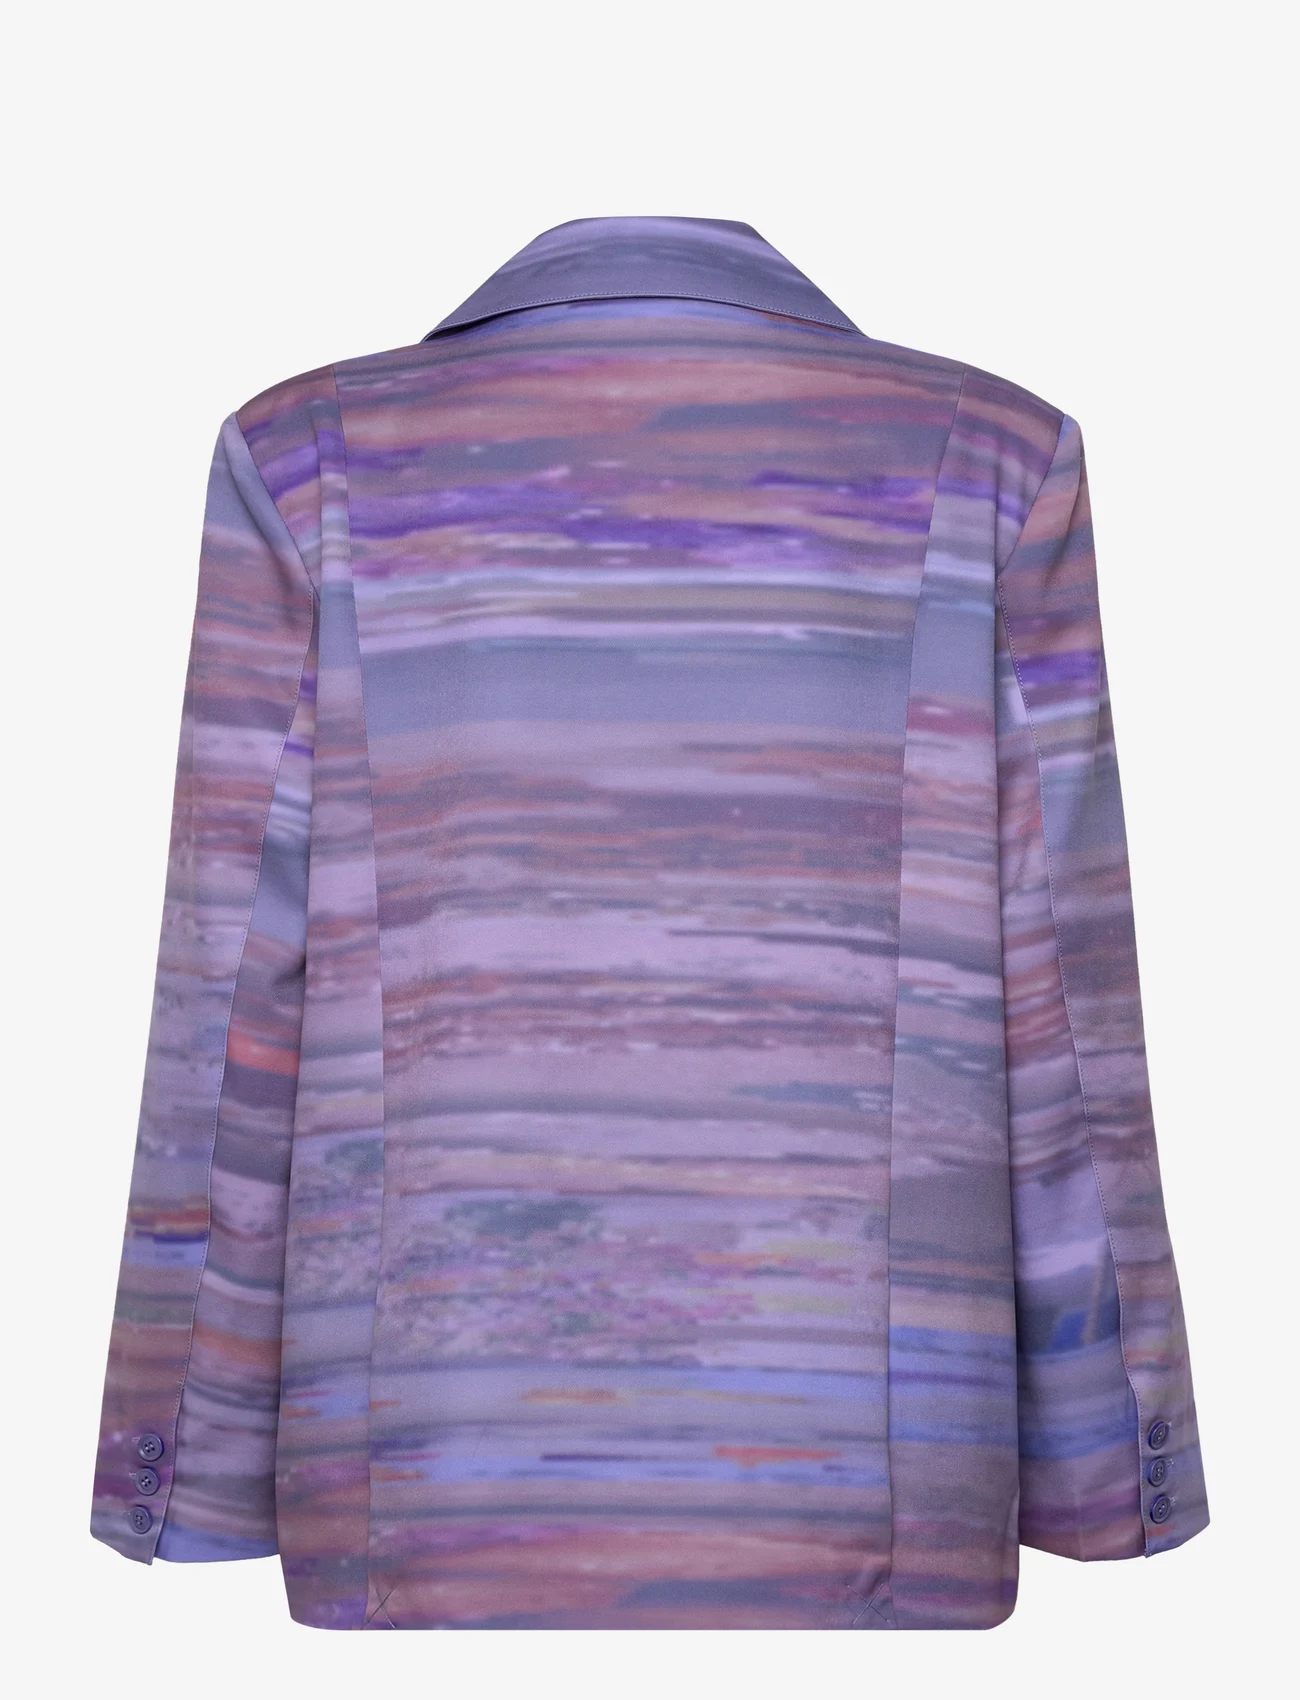 Hosbjerg - Line Adele Blazer - festklær til outlet-priser - abstract dinner purple - 1